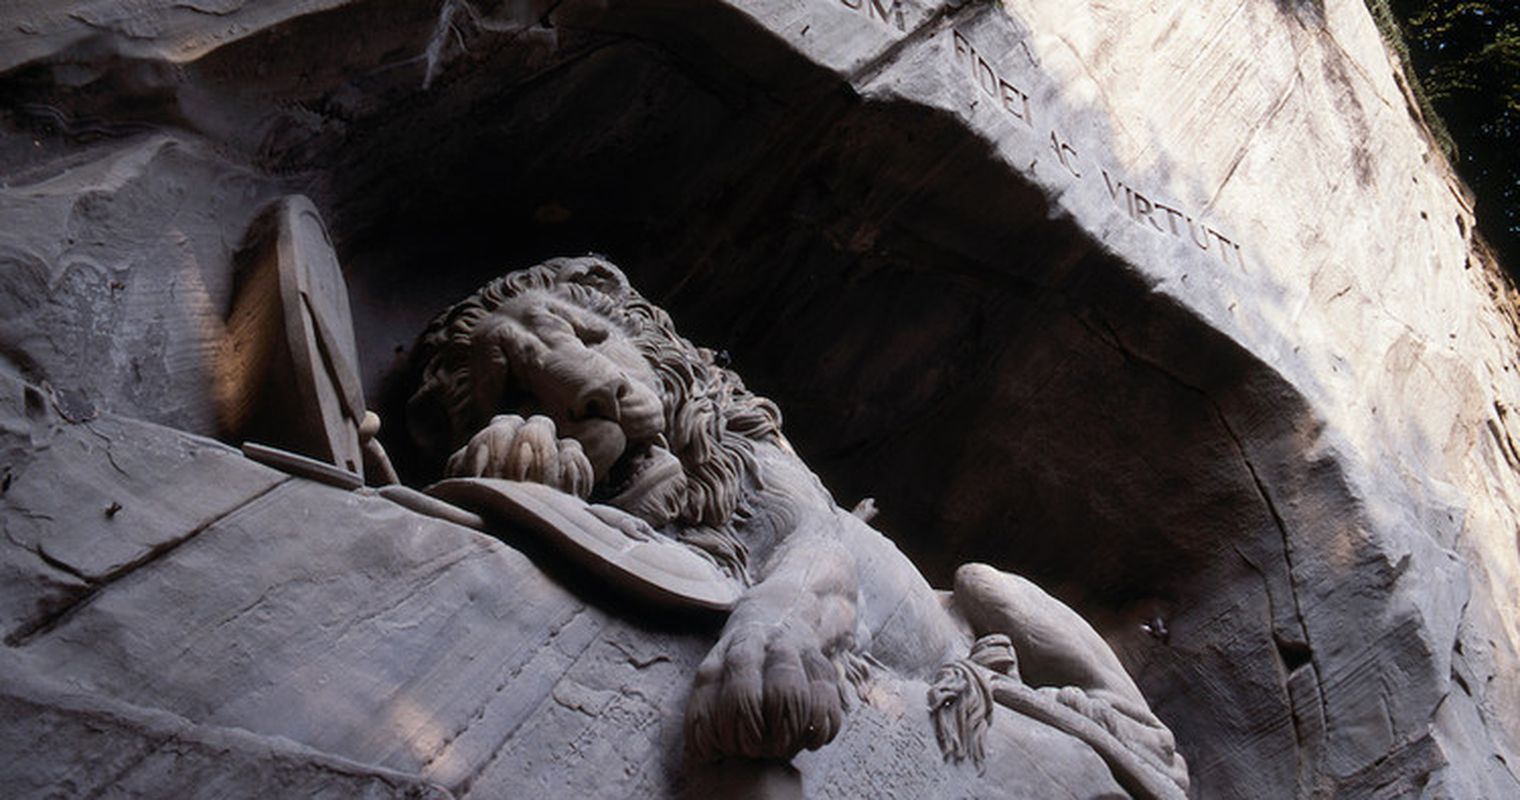 Nein, das Löwendenkmal ist kein trauernder Zürileu